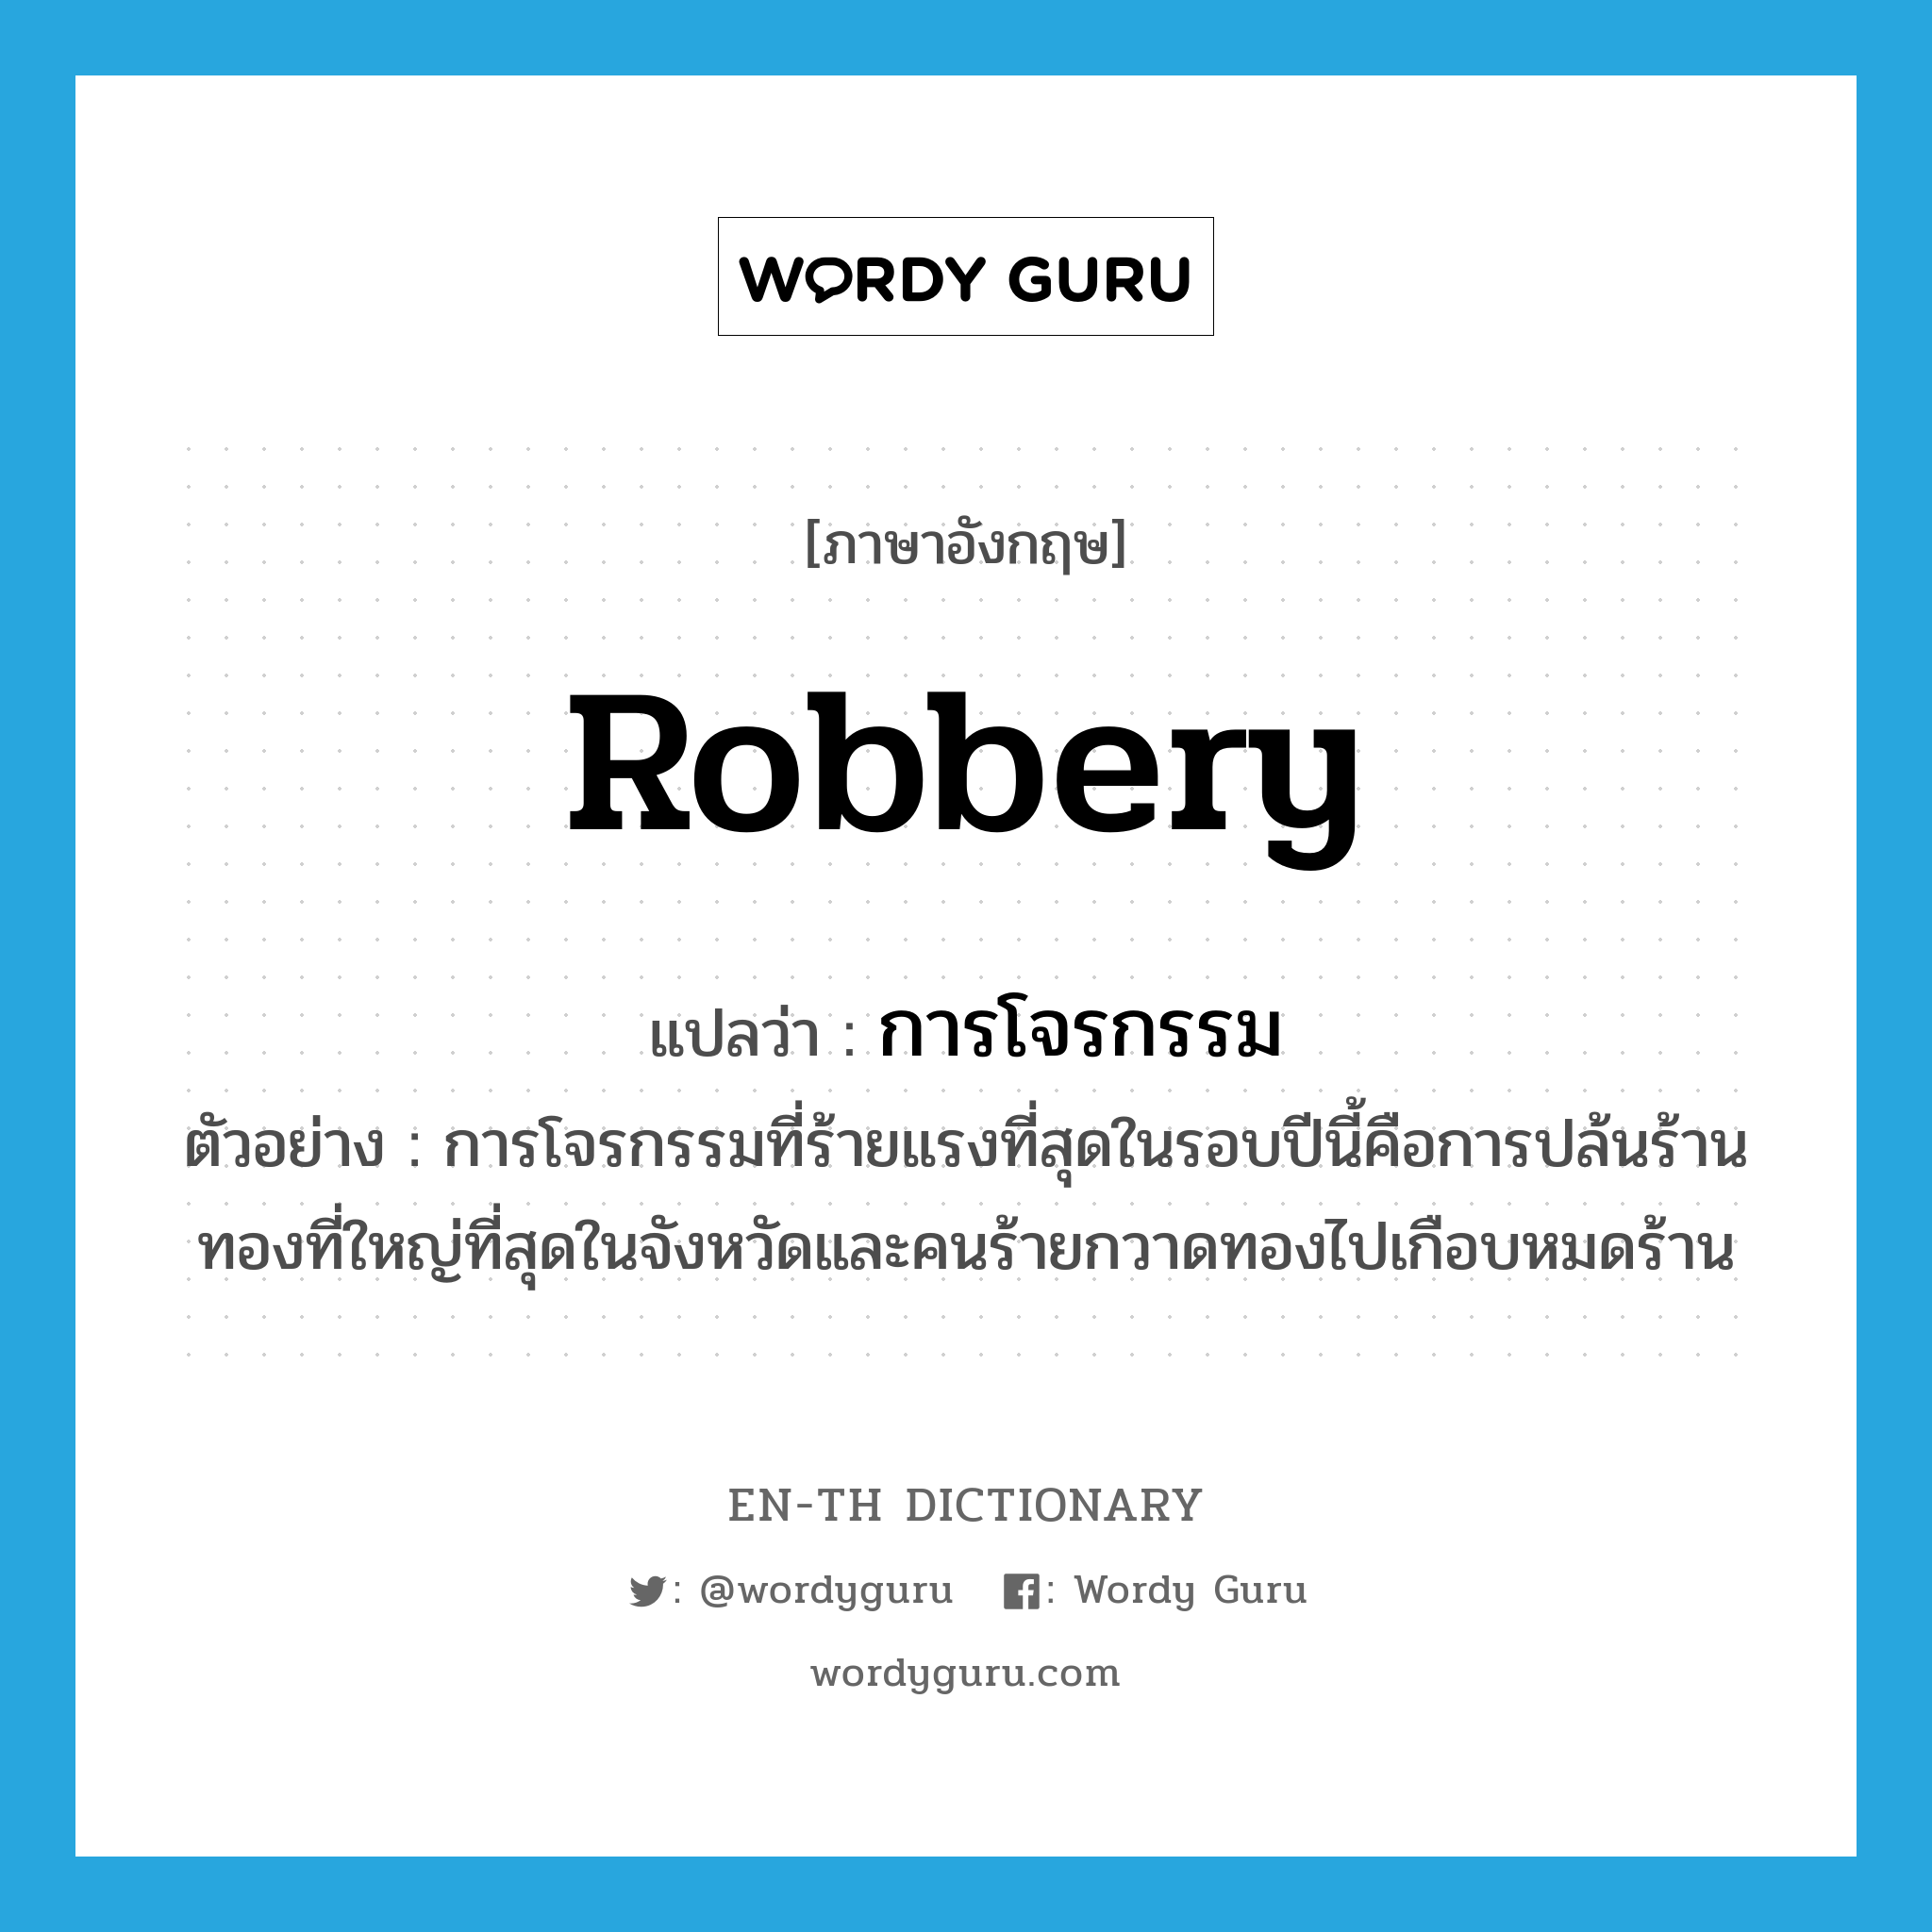 robbery แปลว่า?, คำศัพท์ภาษาอังกฤษ robbery แปลว่า การโจรกรรม ประเภท N ตัวอย่าง การโจรกรรมที่ร้ายแรงที่สุดในรอบปีนี้คือการปล้นร้านทองที่ใหญ่ที่สุดในจังหวัดและคนร้ายกวาดทองไปเกือบหมดร้าน หมวด N